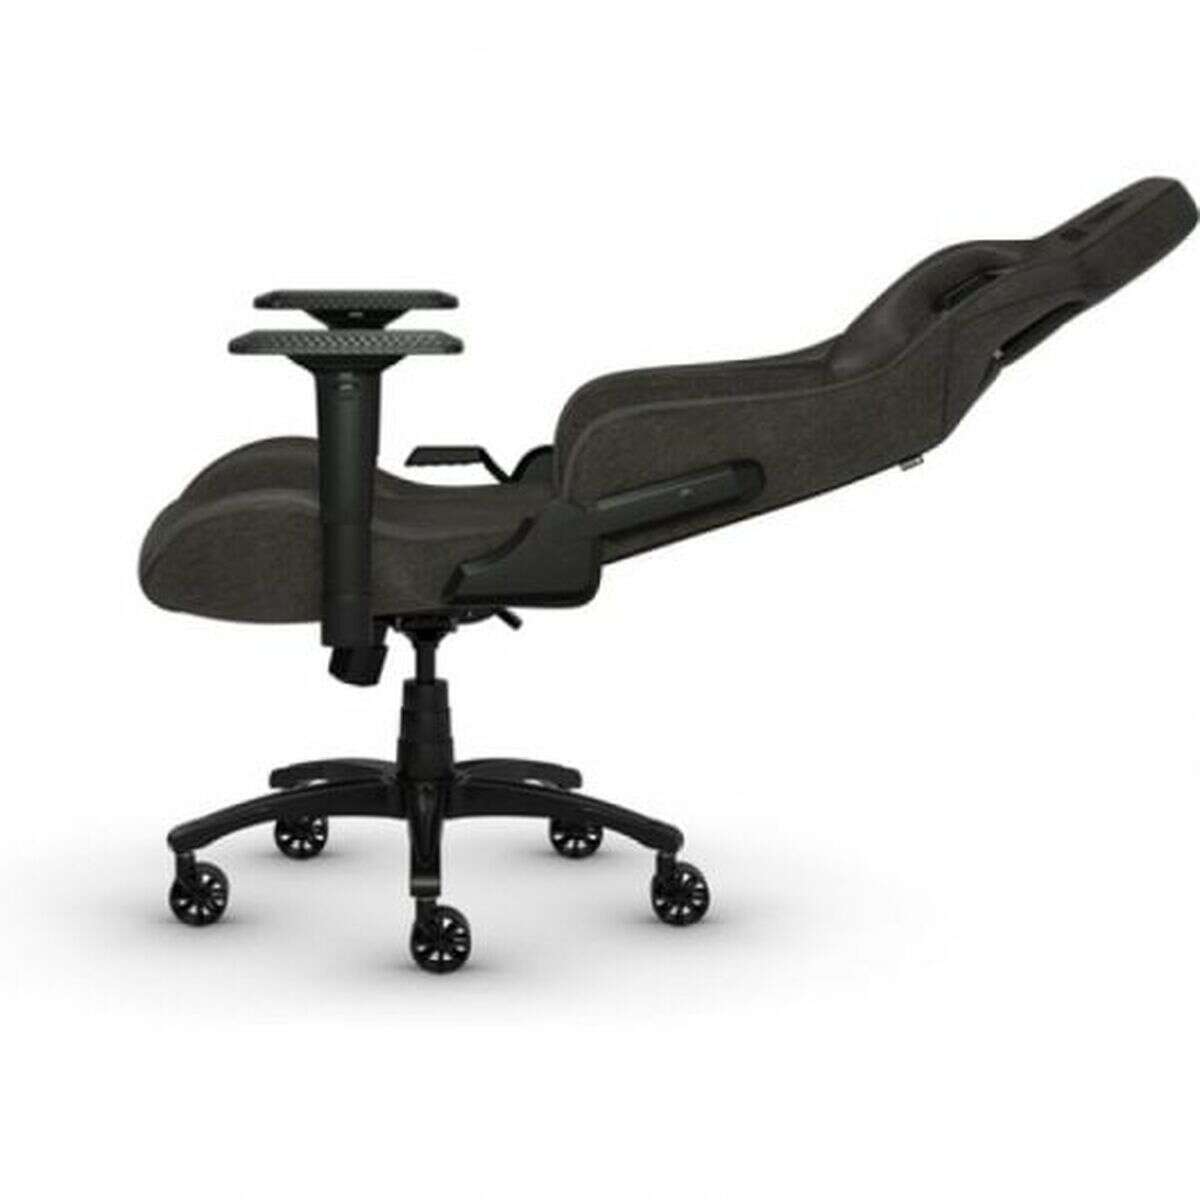 Csiribiri gamer szék corsair cf-9010057-ww fekete szürke